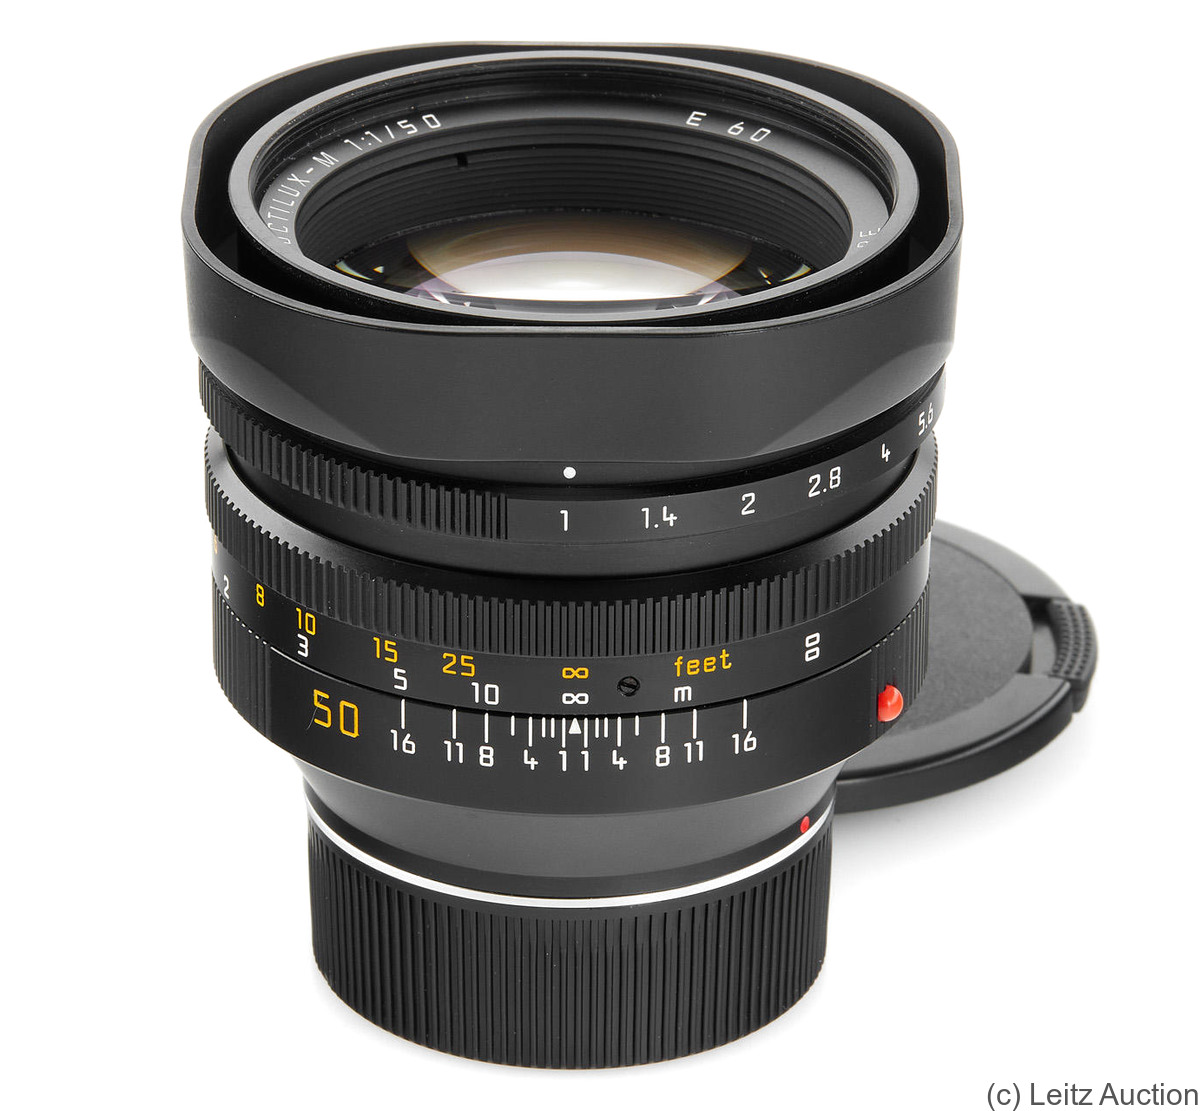 Leitz: 50mm (5cm) f1 Noctilux-M (BM, 11822) camera